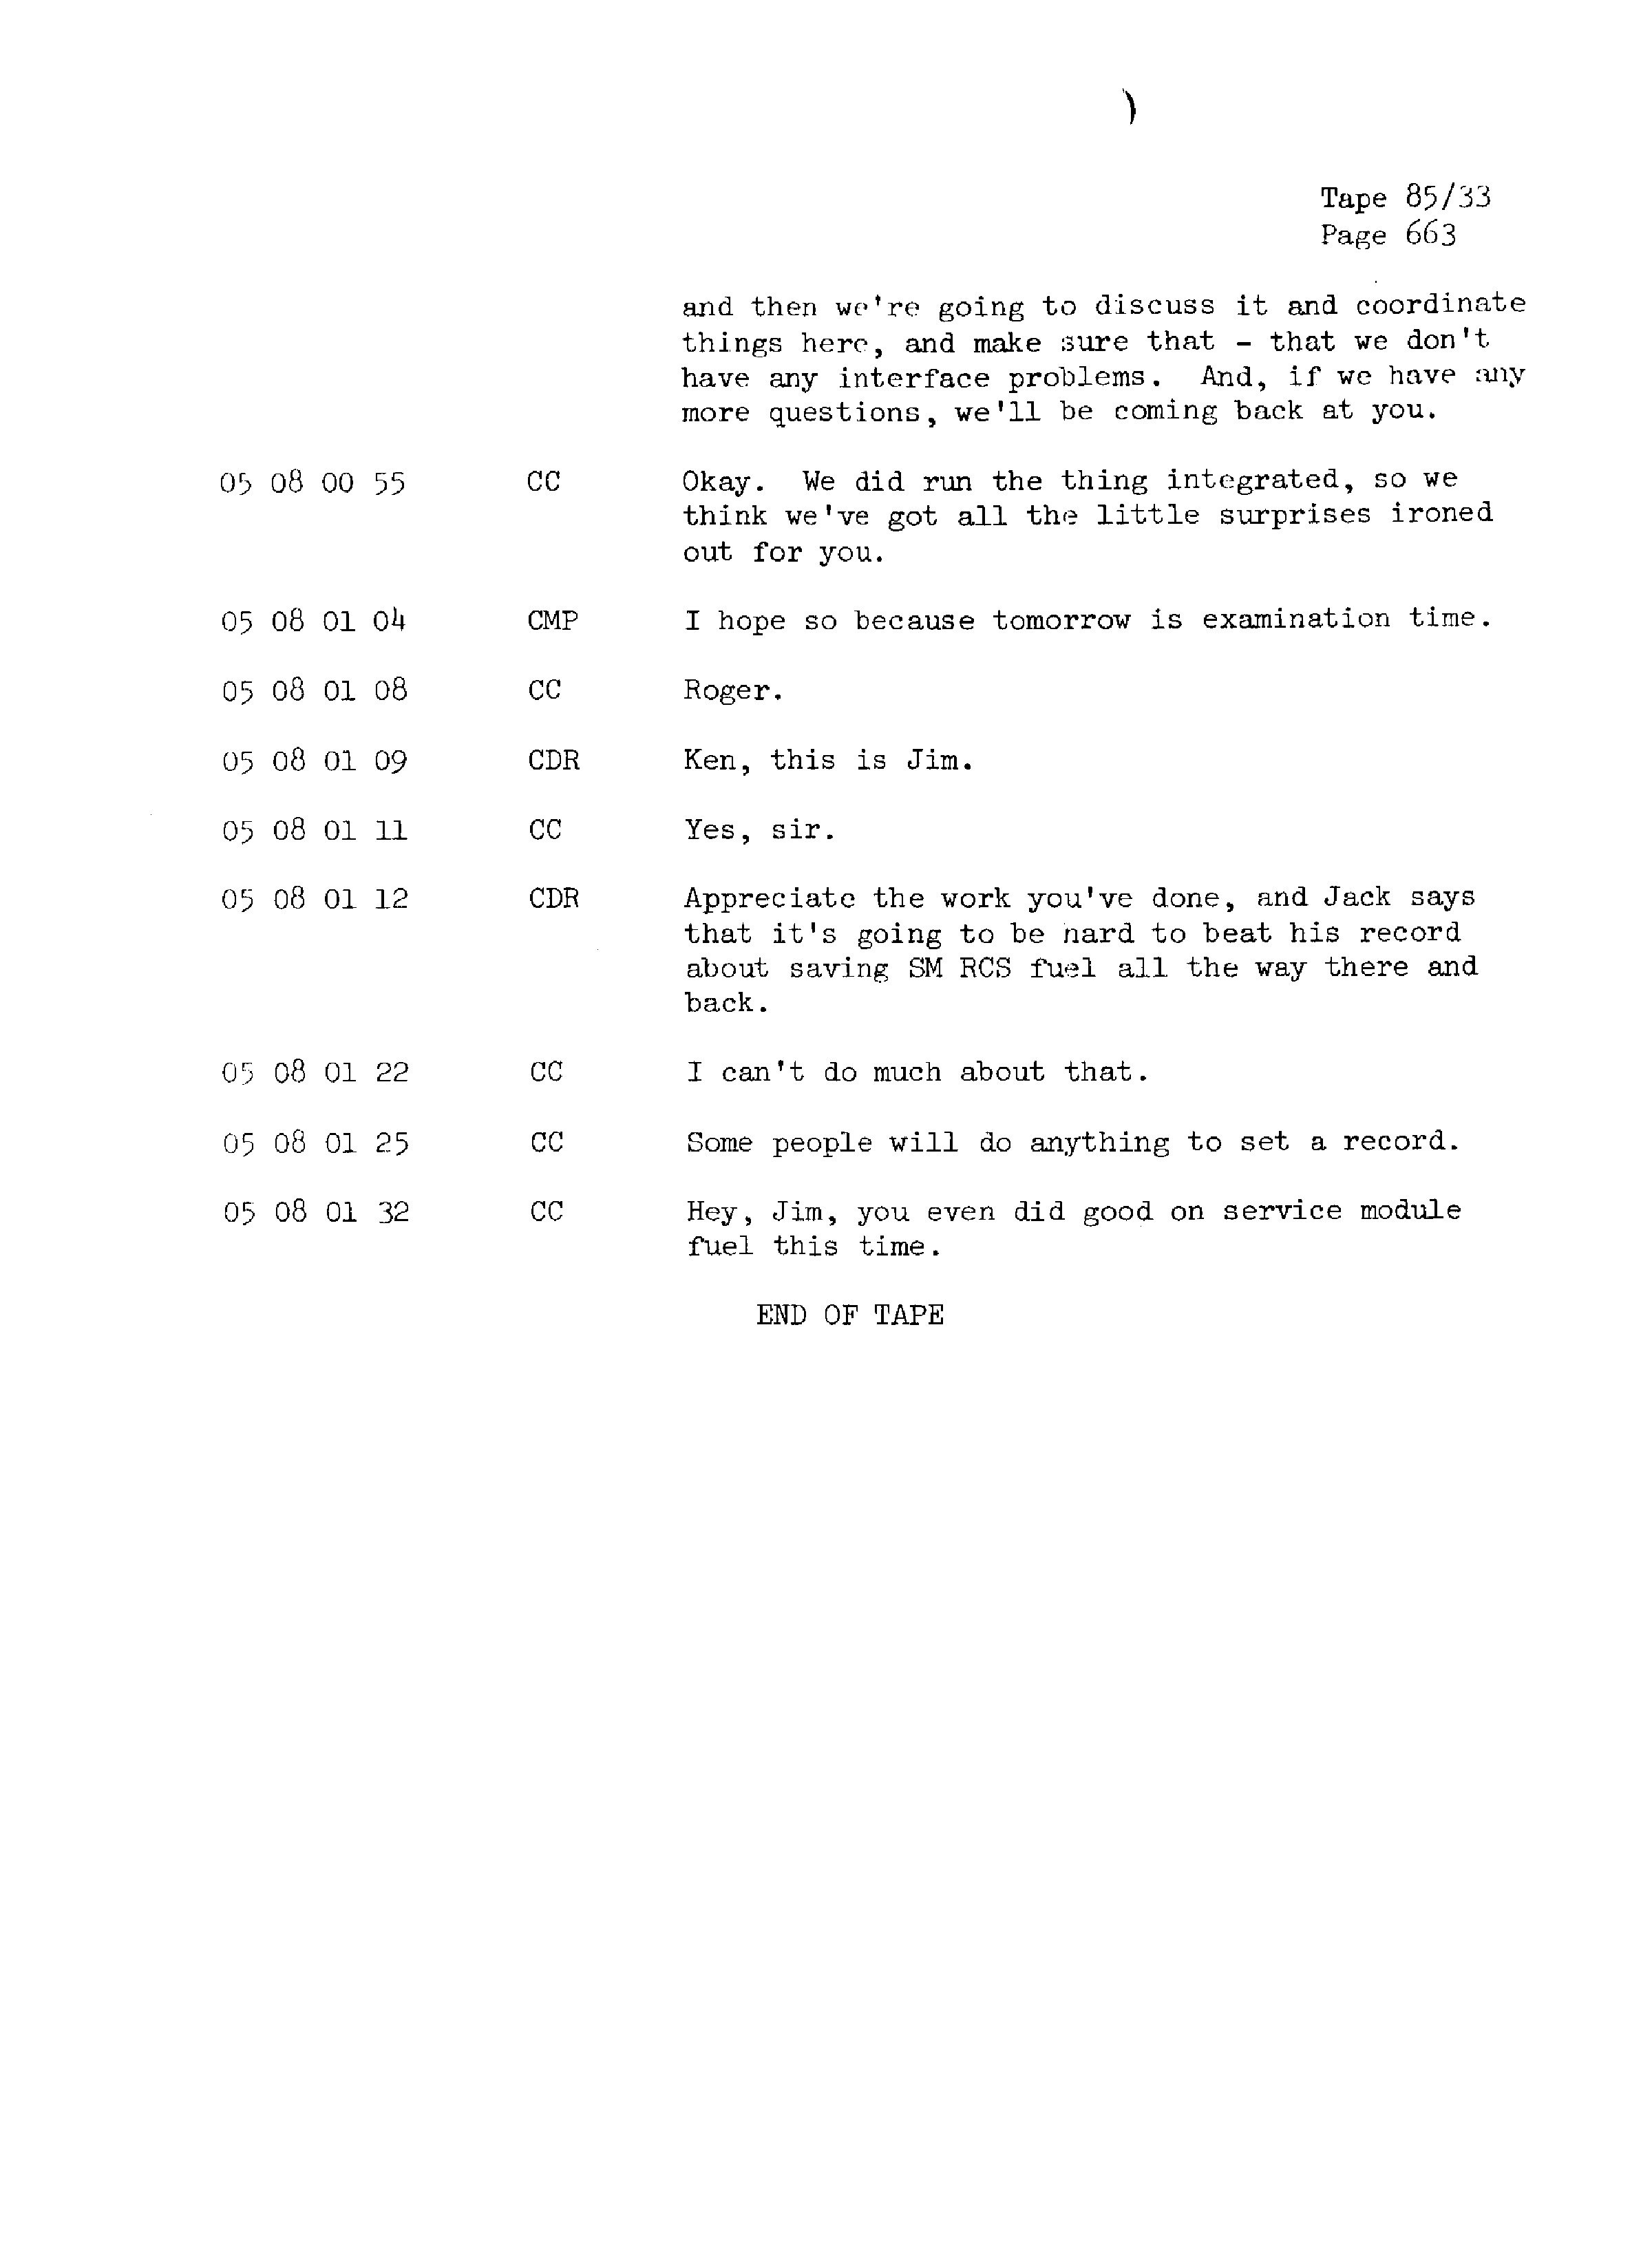 Page 670 of Apollo 13’s original transcript